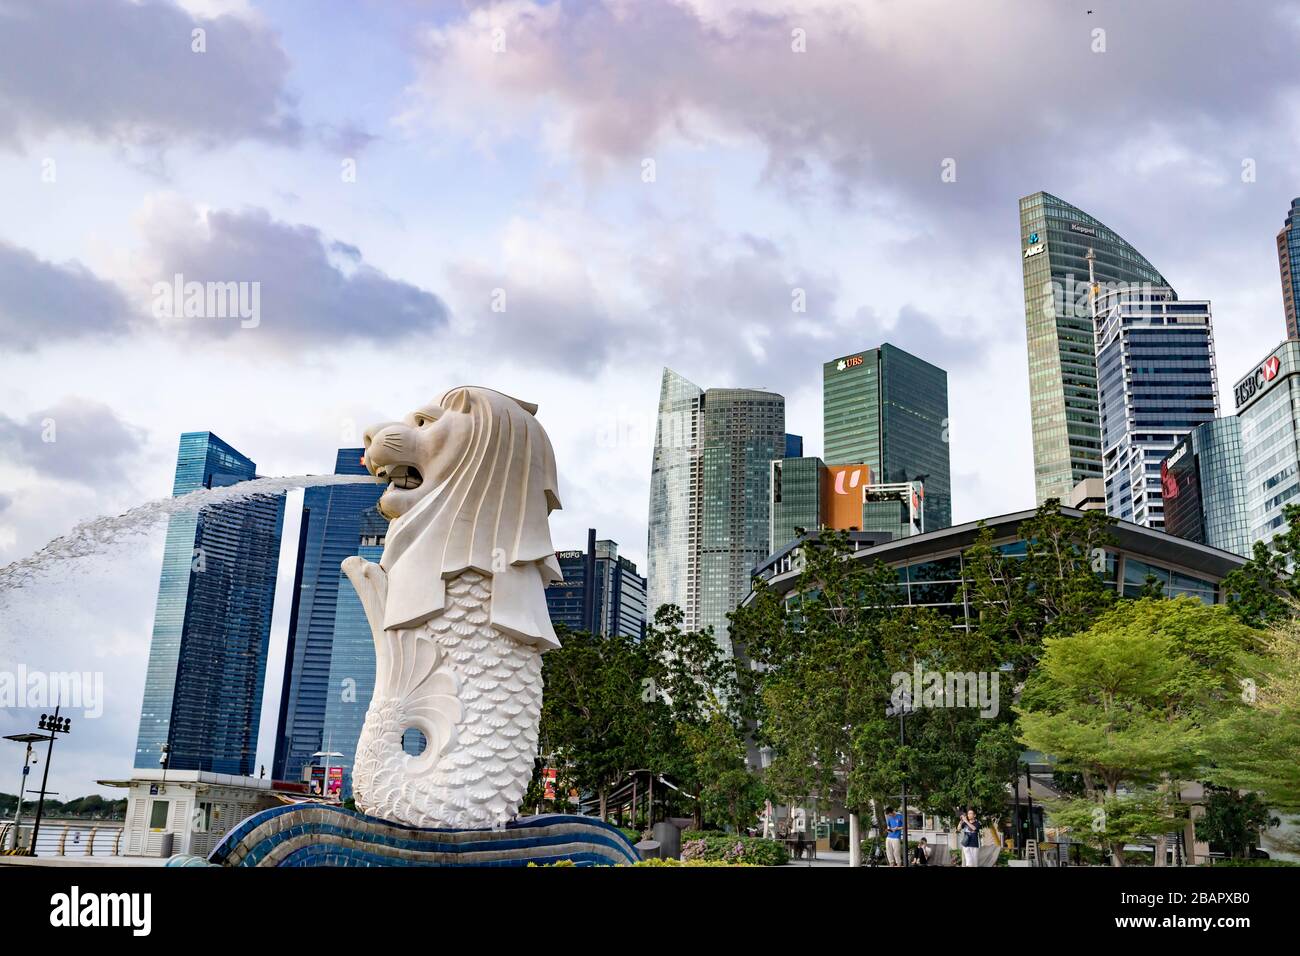 Skyline del Merlion Park presso il Central Business District con UBS, ANZ, HSBC, DBS Buildings presso la Marina Bay Area, Singapore, 29 marzo 2020 Foto Stock